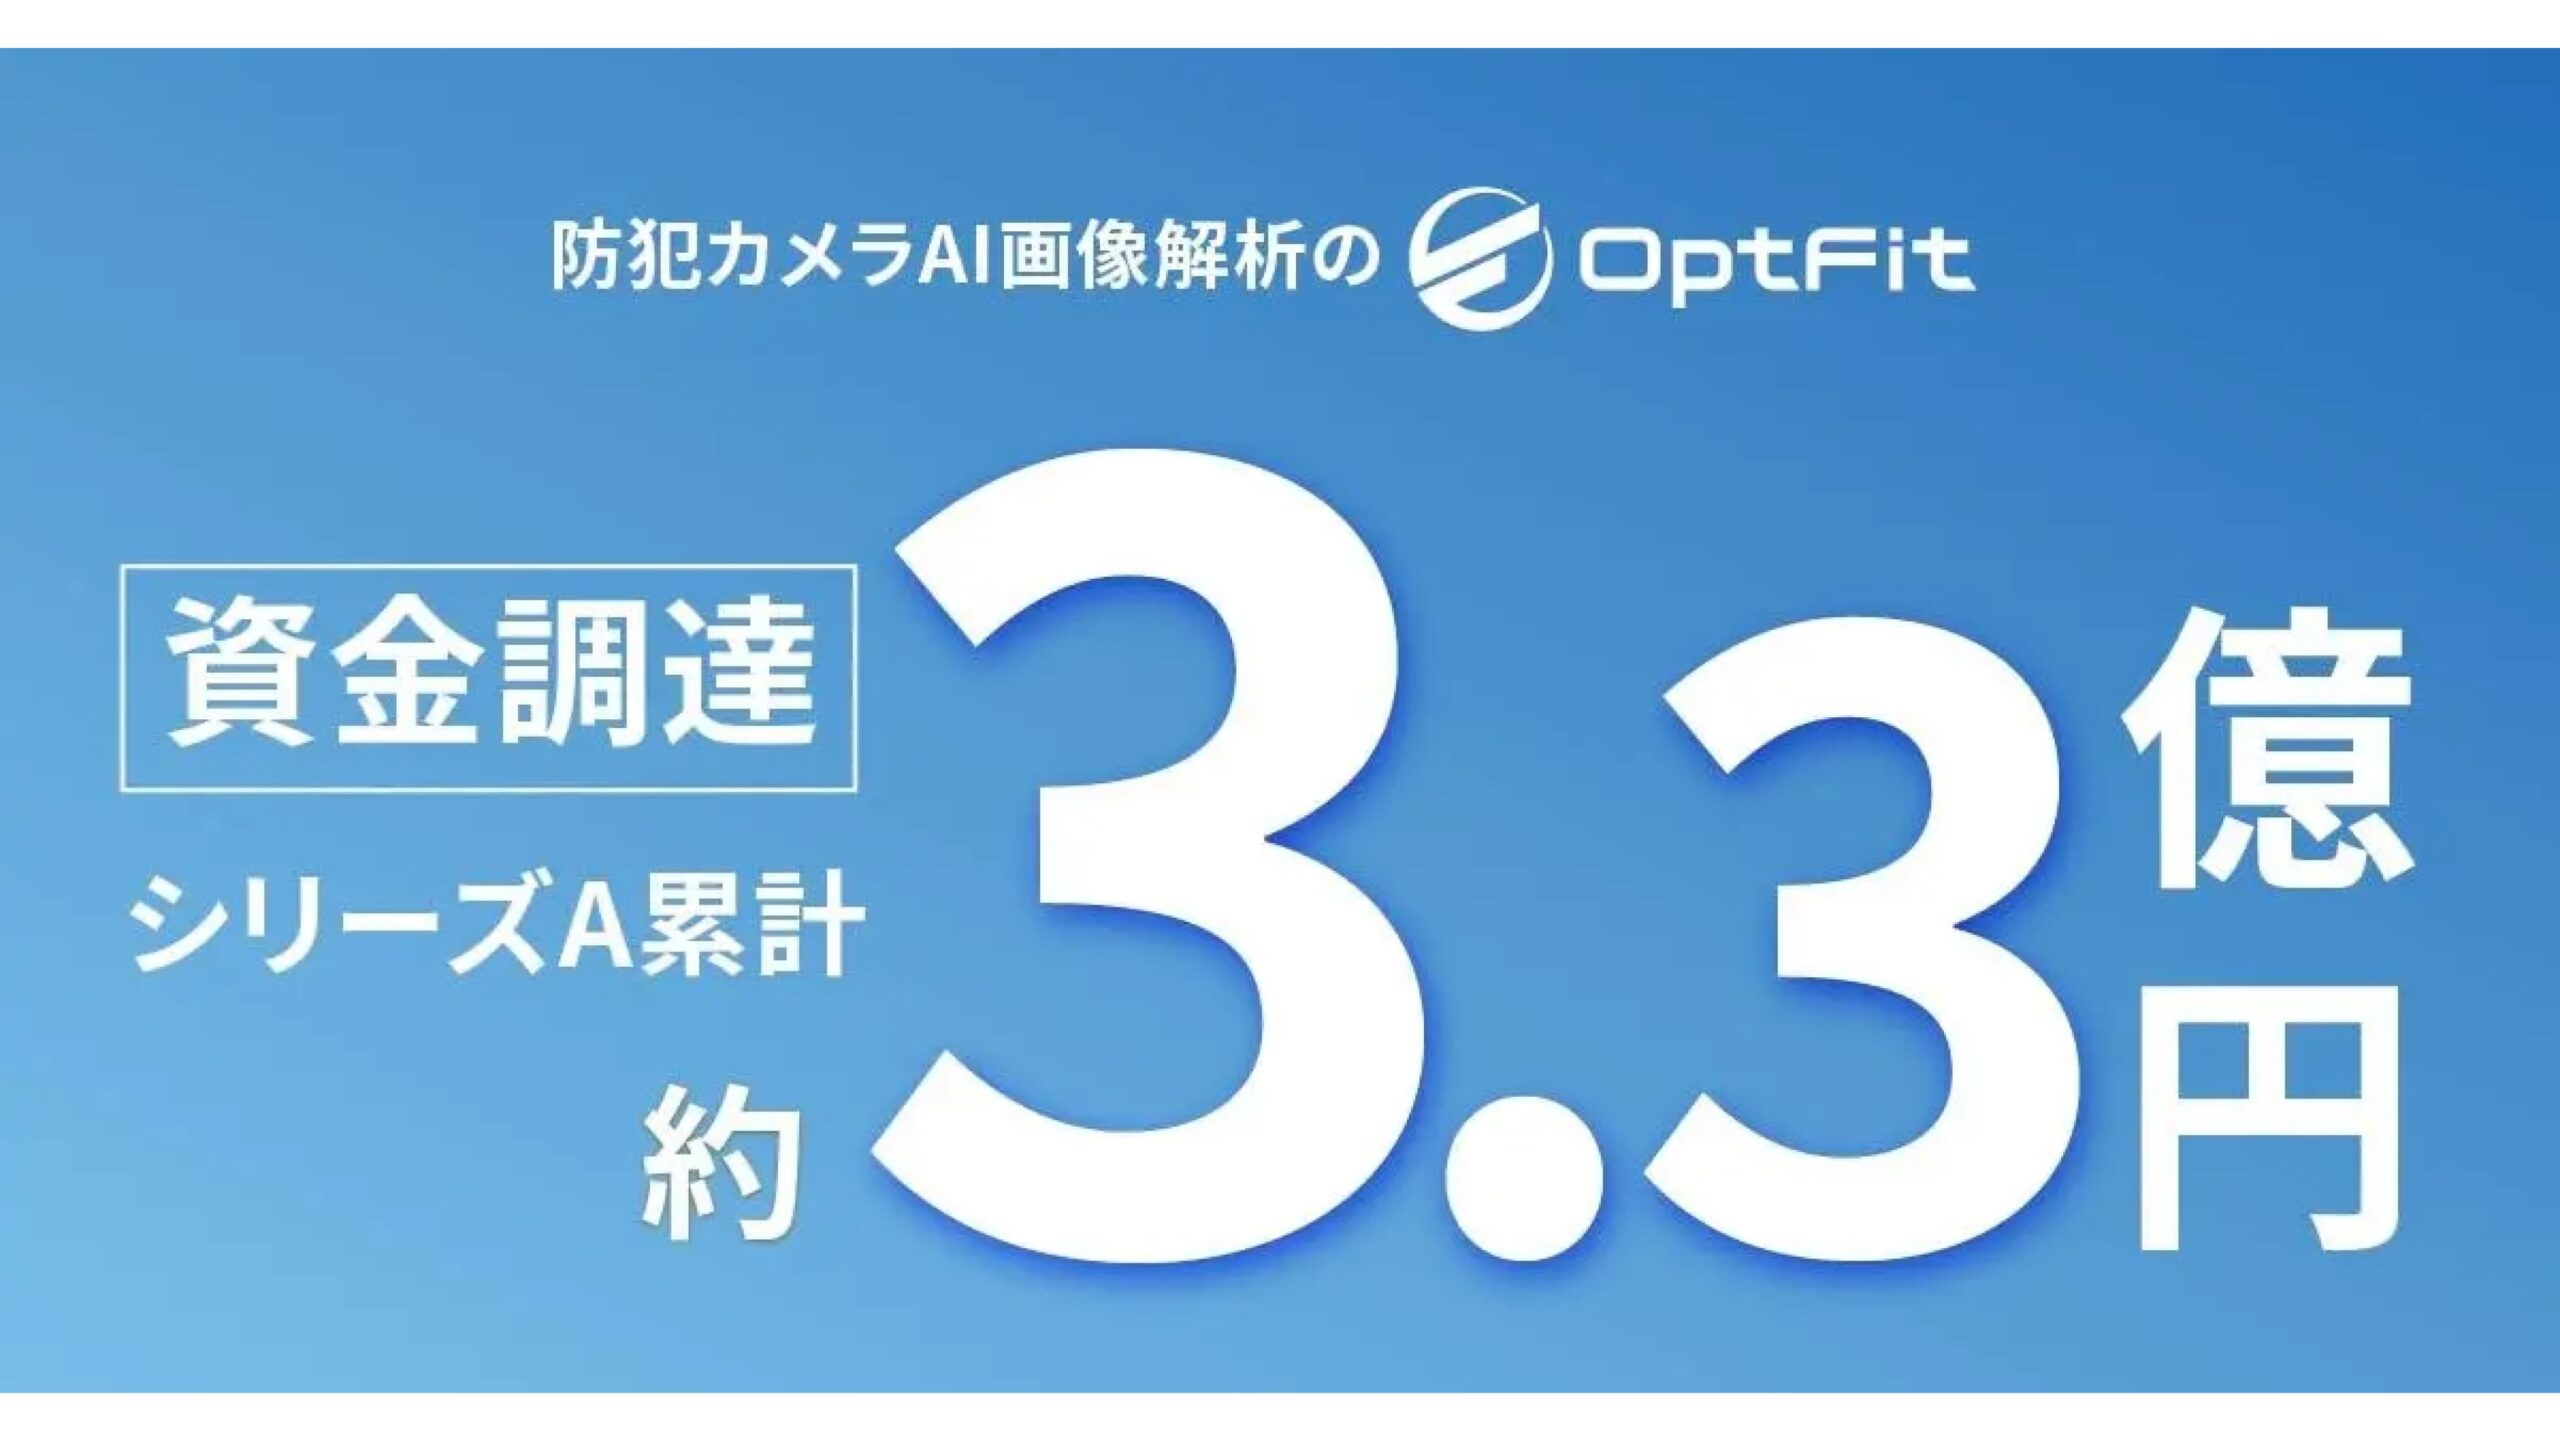 フィットネスジム専用AI画像解析サービスを提供する株式会社Opt FitがシリーズA累計3.3億円に